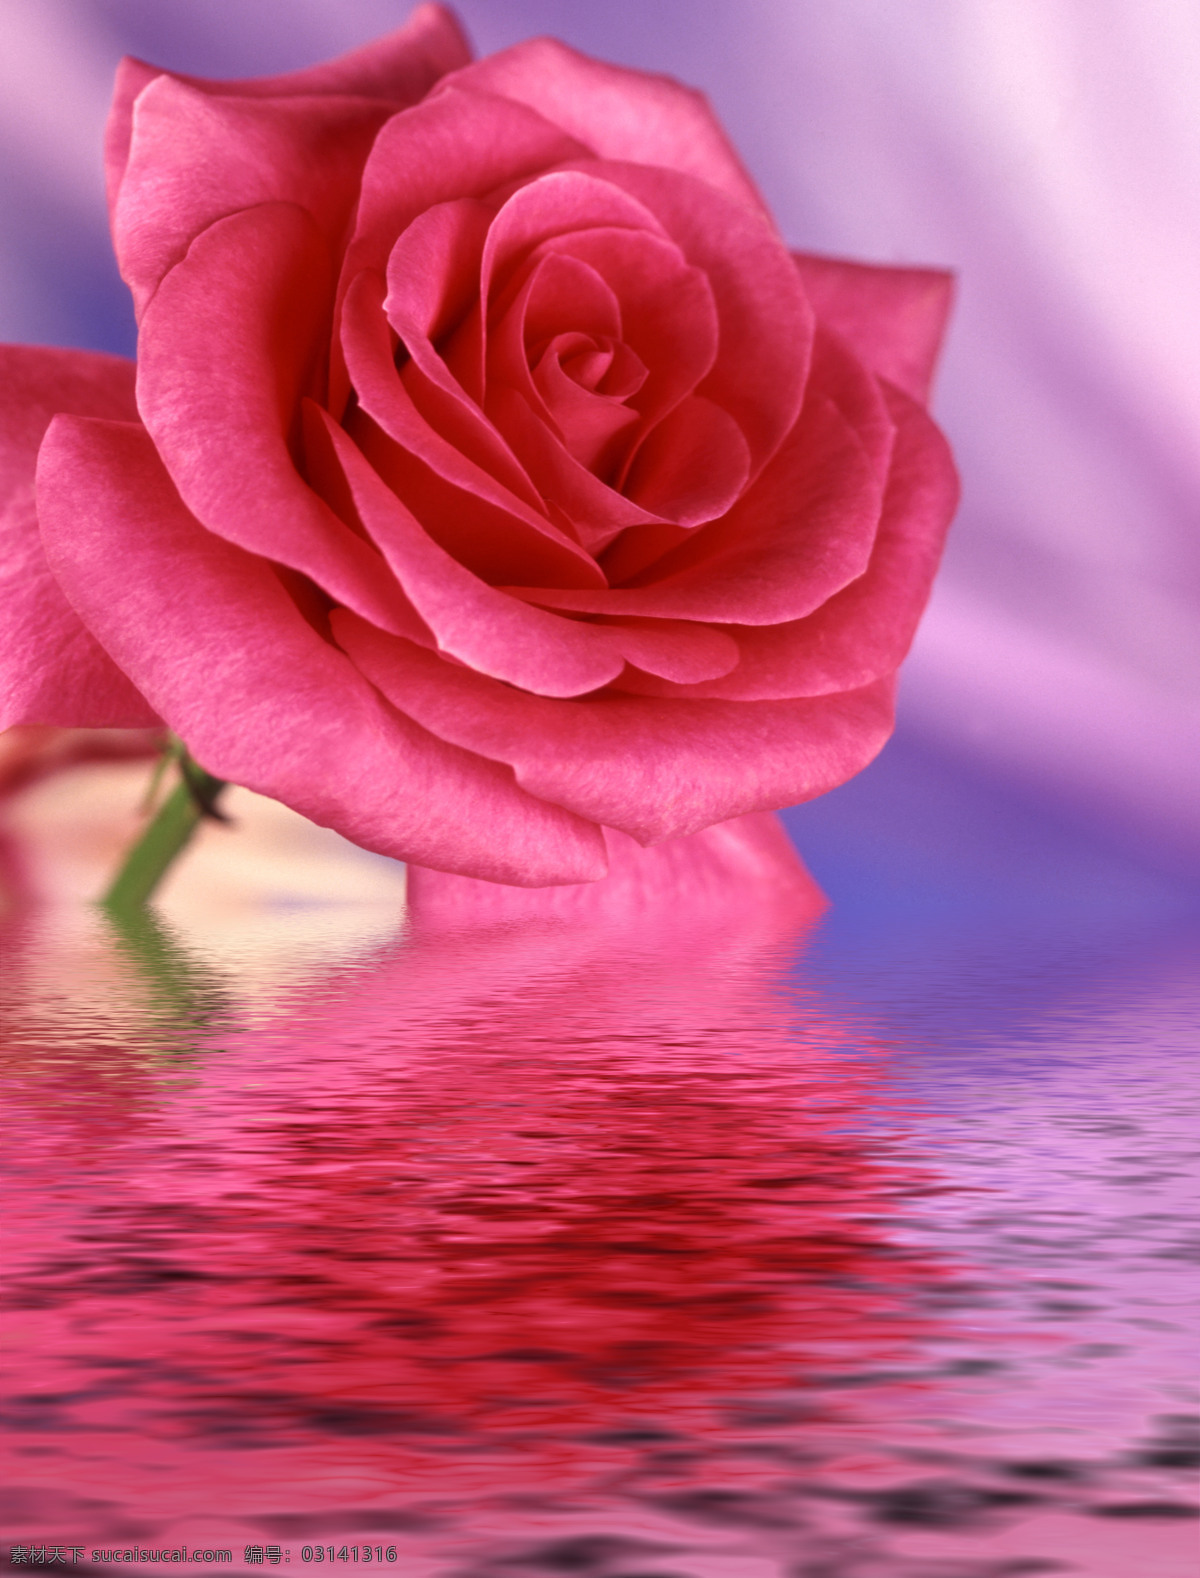 玫瑰花 玫瑰 水中花卉 水中玫瑰 红色玫瑰 红玫瑰 水纹 倒影 一枝花 鲜花 唯美 梦幻 唯美花朵 文化艺术 情人节 浪漫 水中鲜花 花卉 红色 花草 生物世界